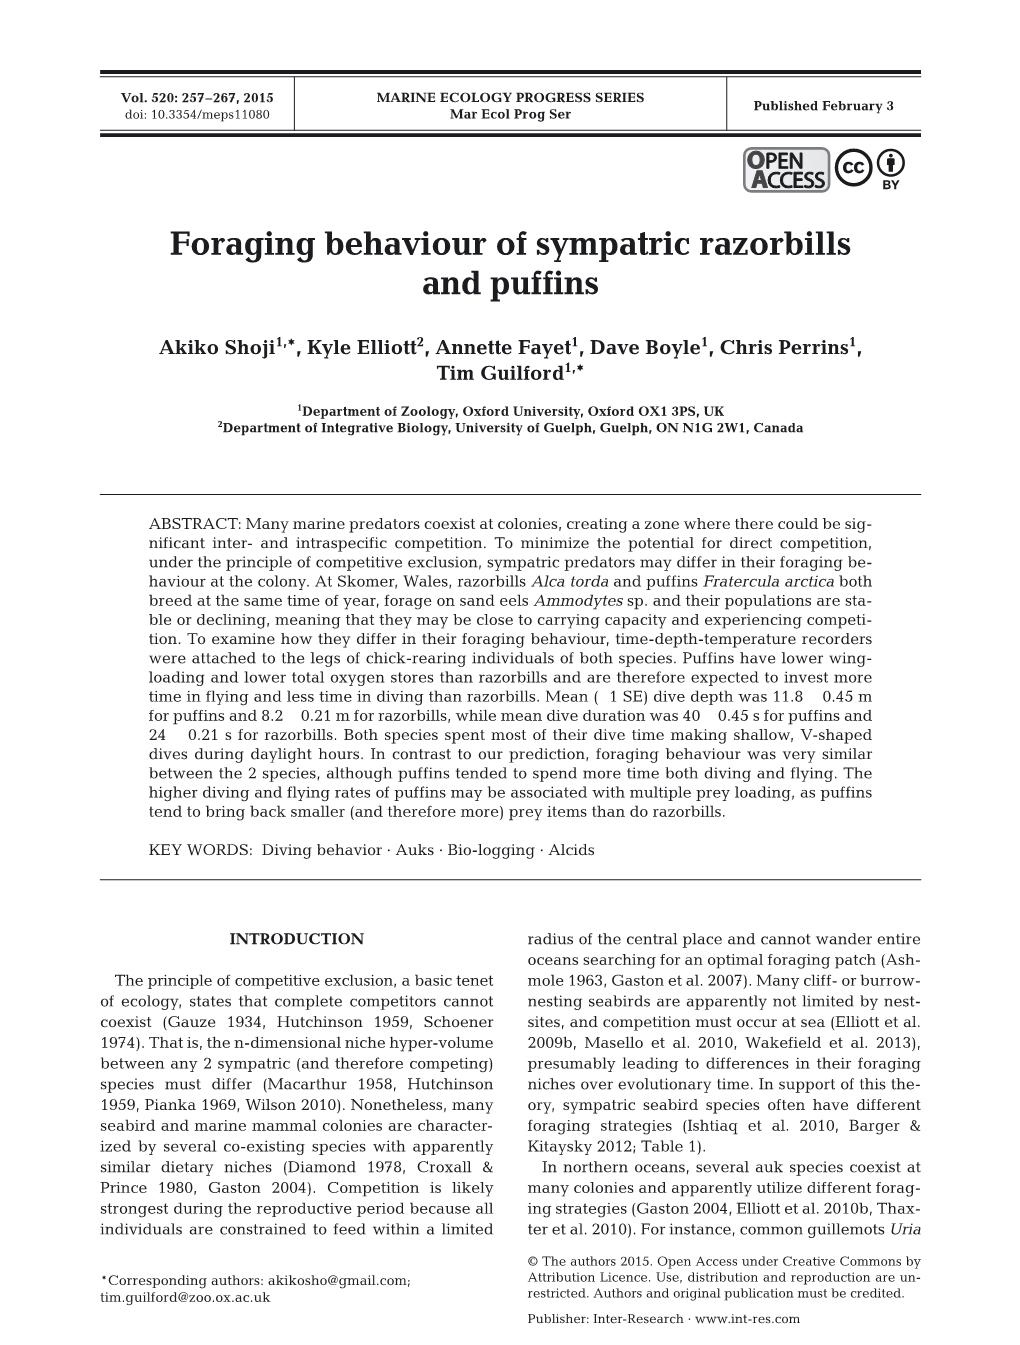 Foraging Behaviour of Sympatric Razorbills and Puffins